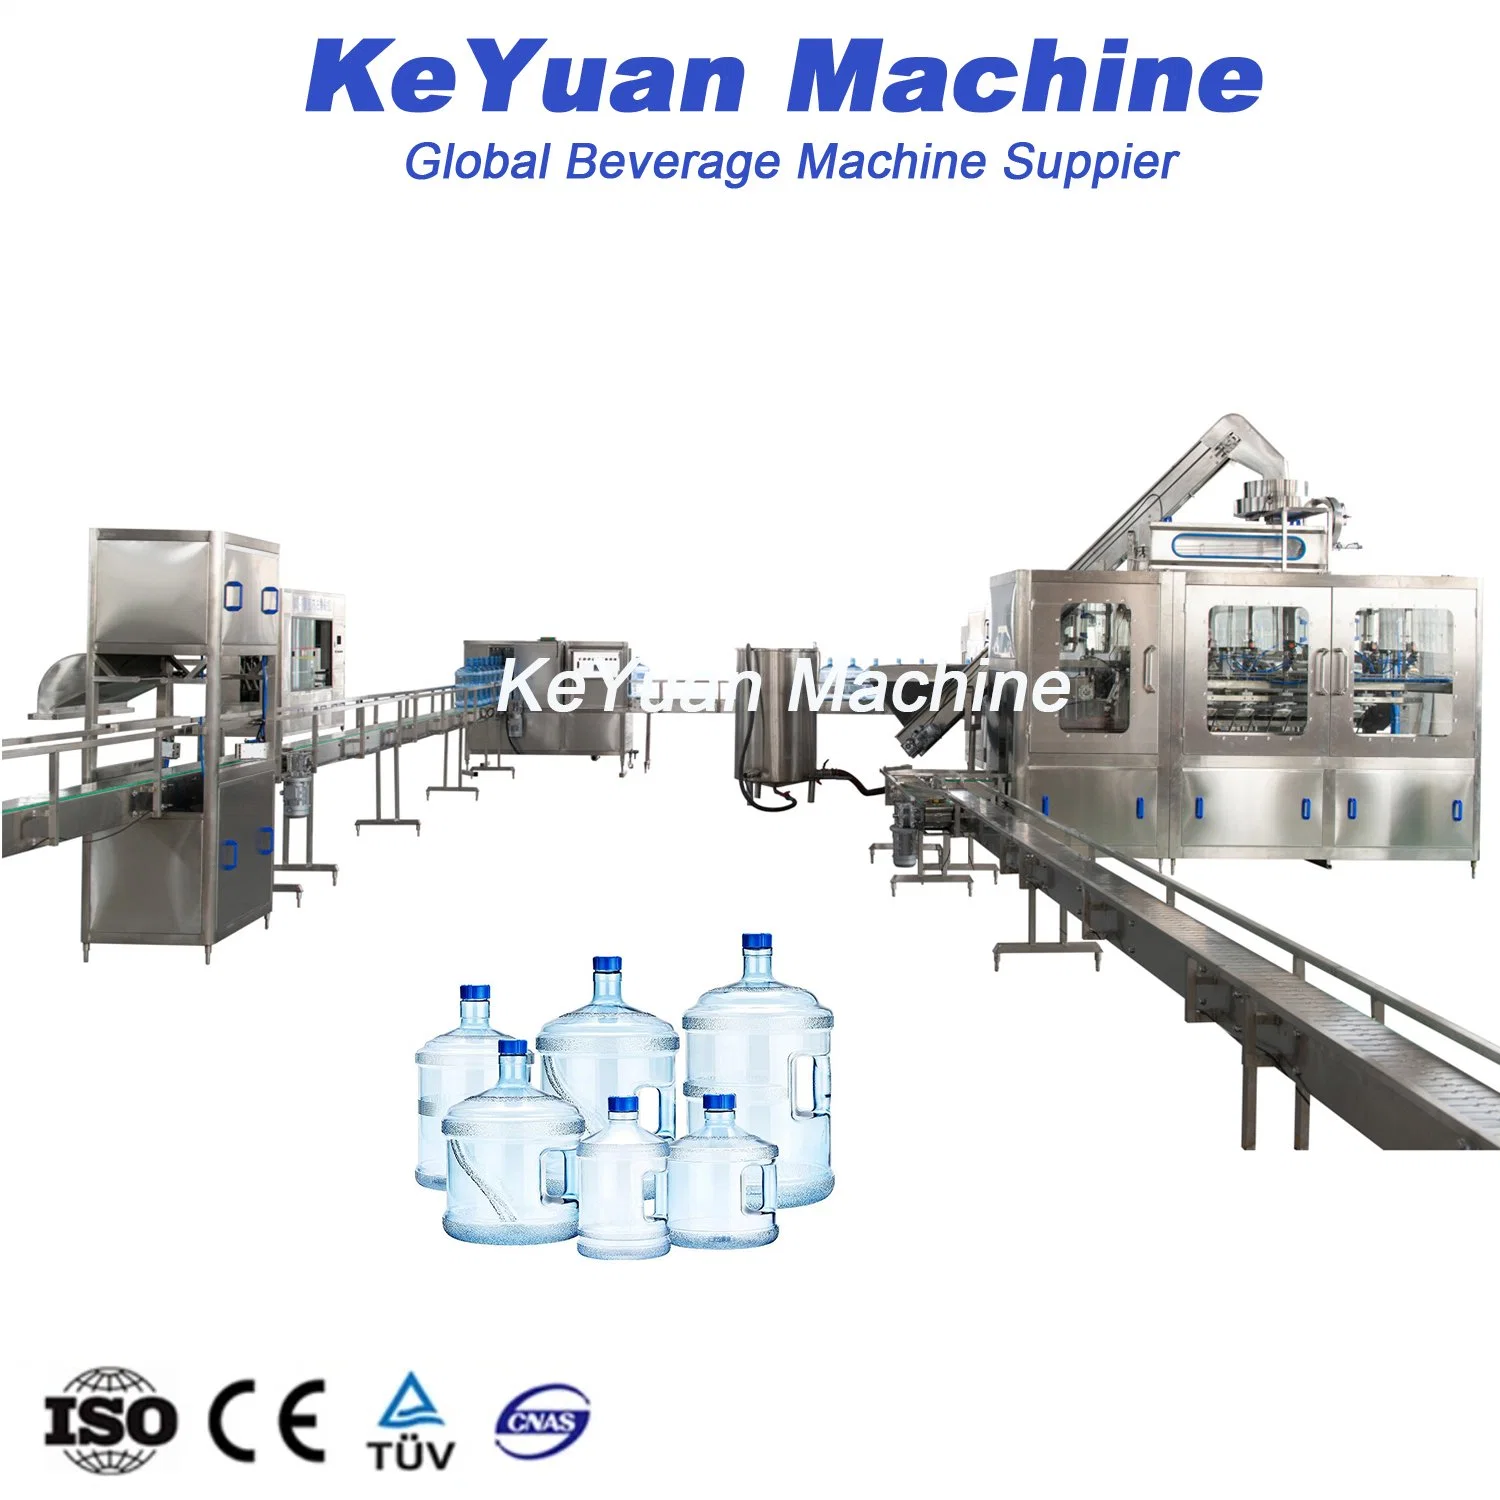 Machine de remplissage de bouteilles de 3 à 5 gallons d'eau minérale pure automatique pour ligne de production d'usine d'embouteillage pour baril distributeur de 12L / 15L / 20L.